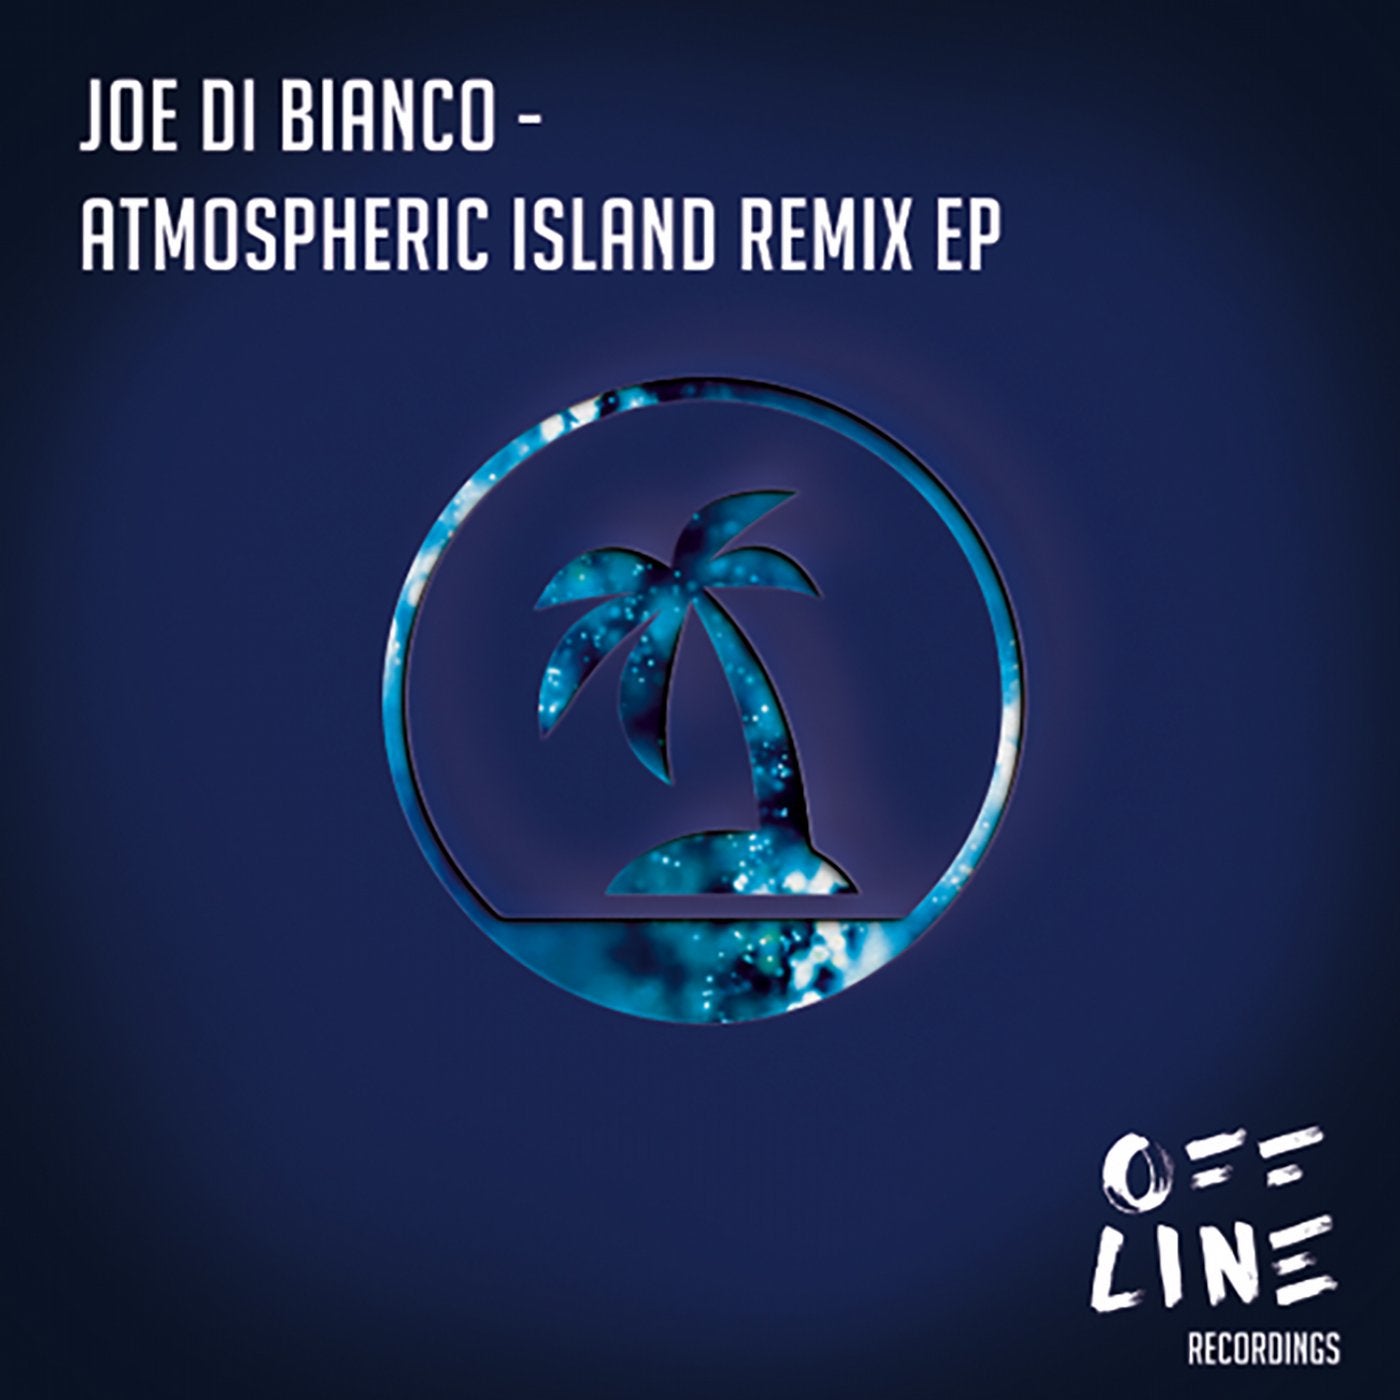 Atmospheric Island Remix EP